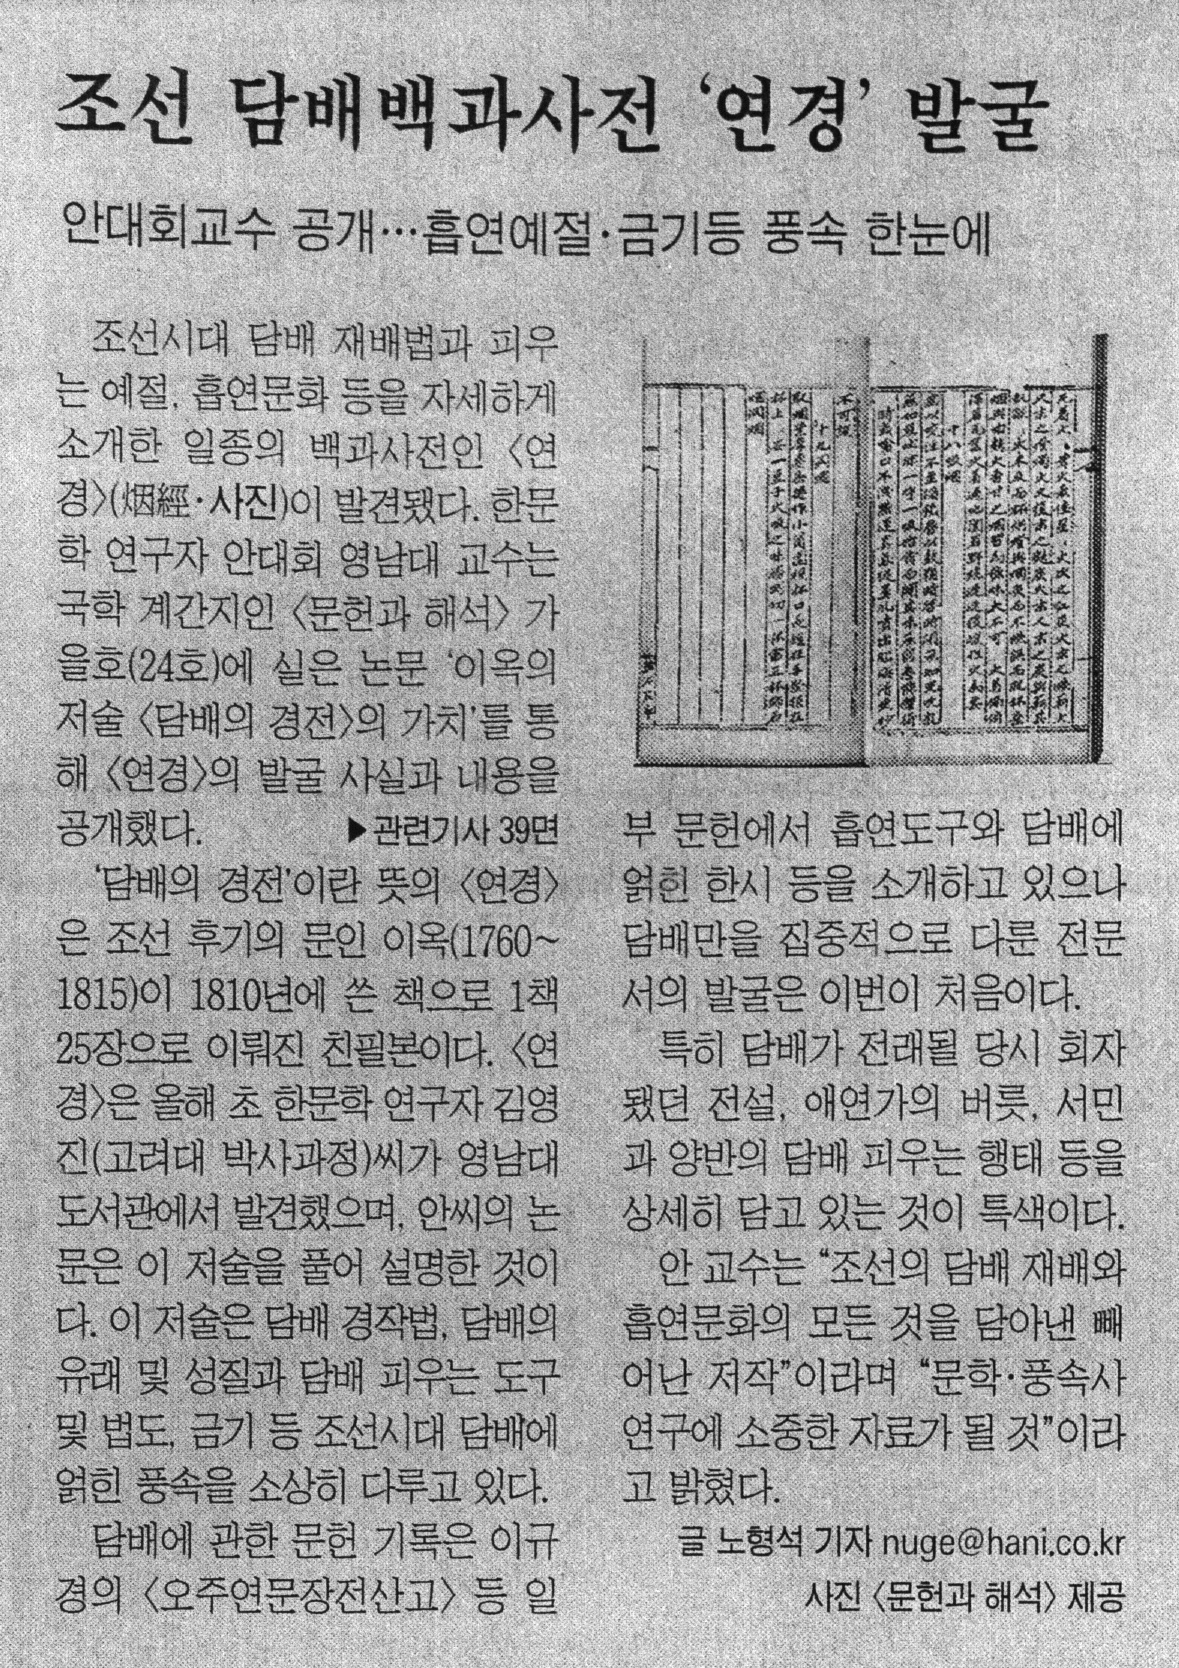 2003 조선 담배백과사전 '연경' 발굴